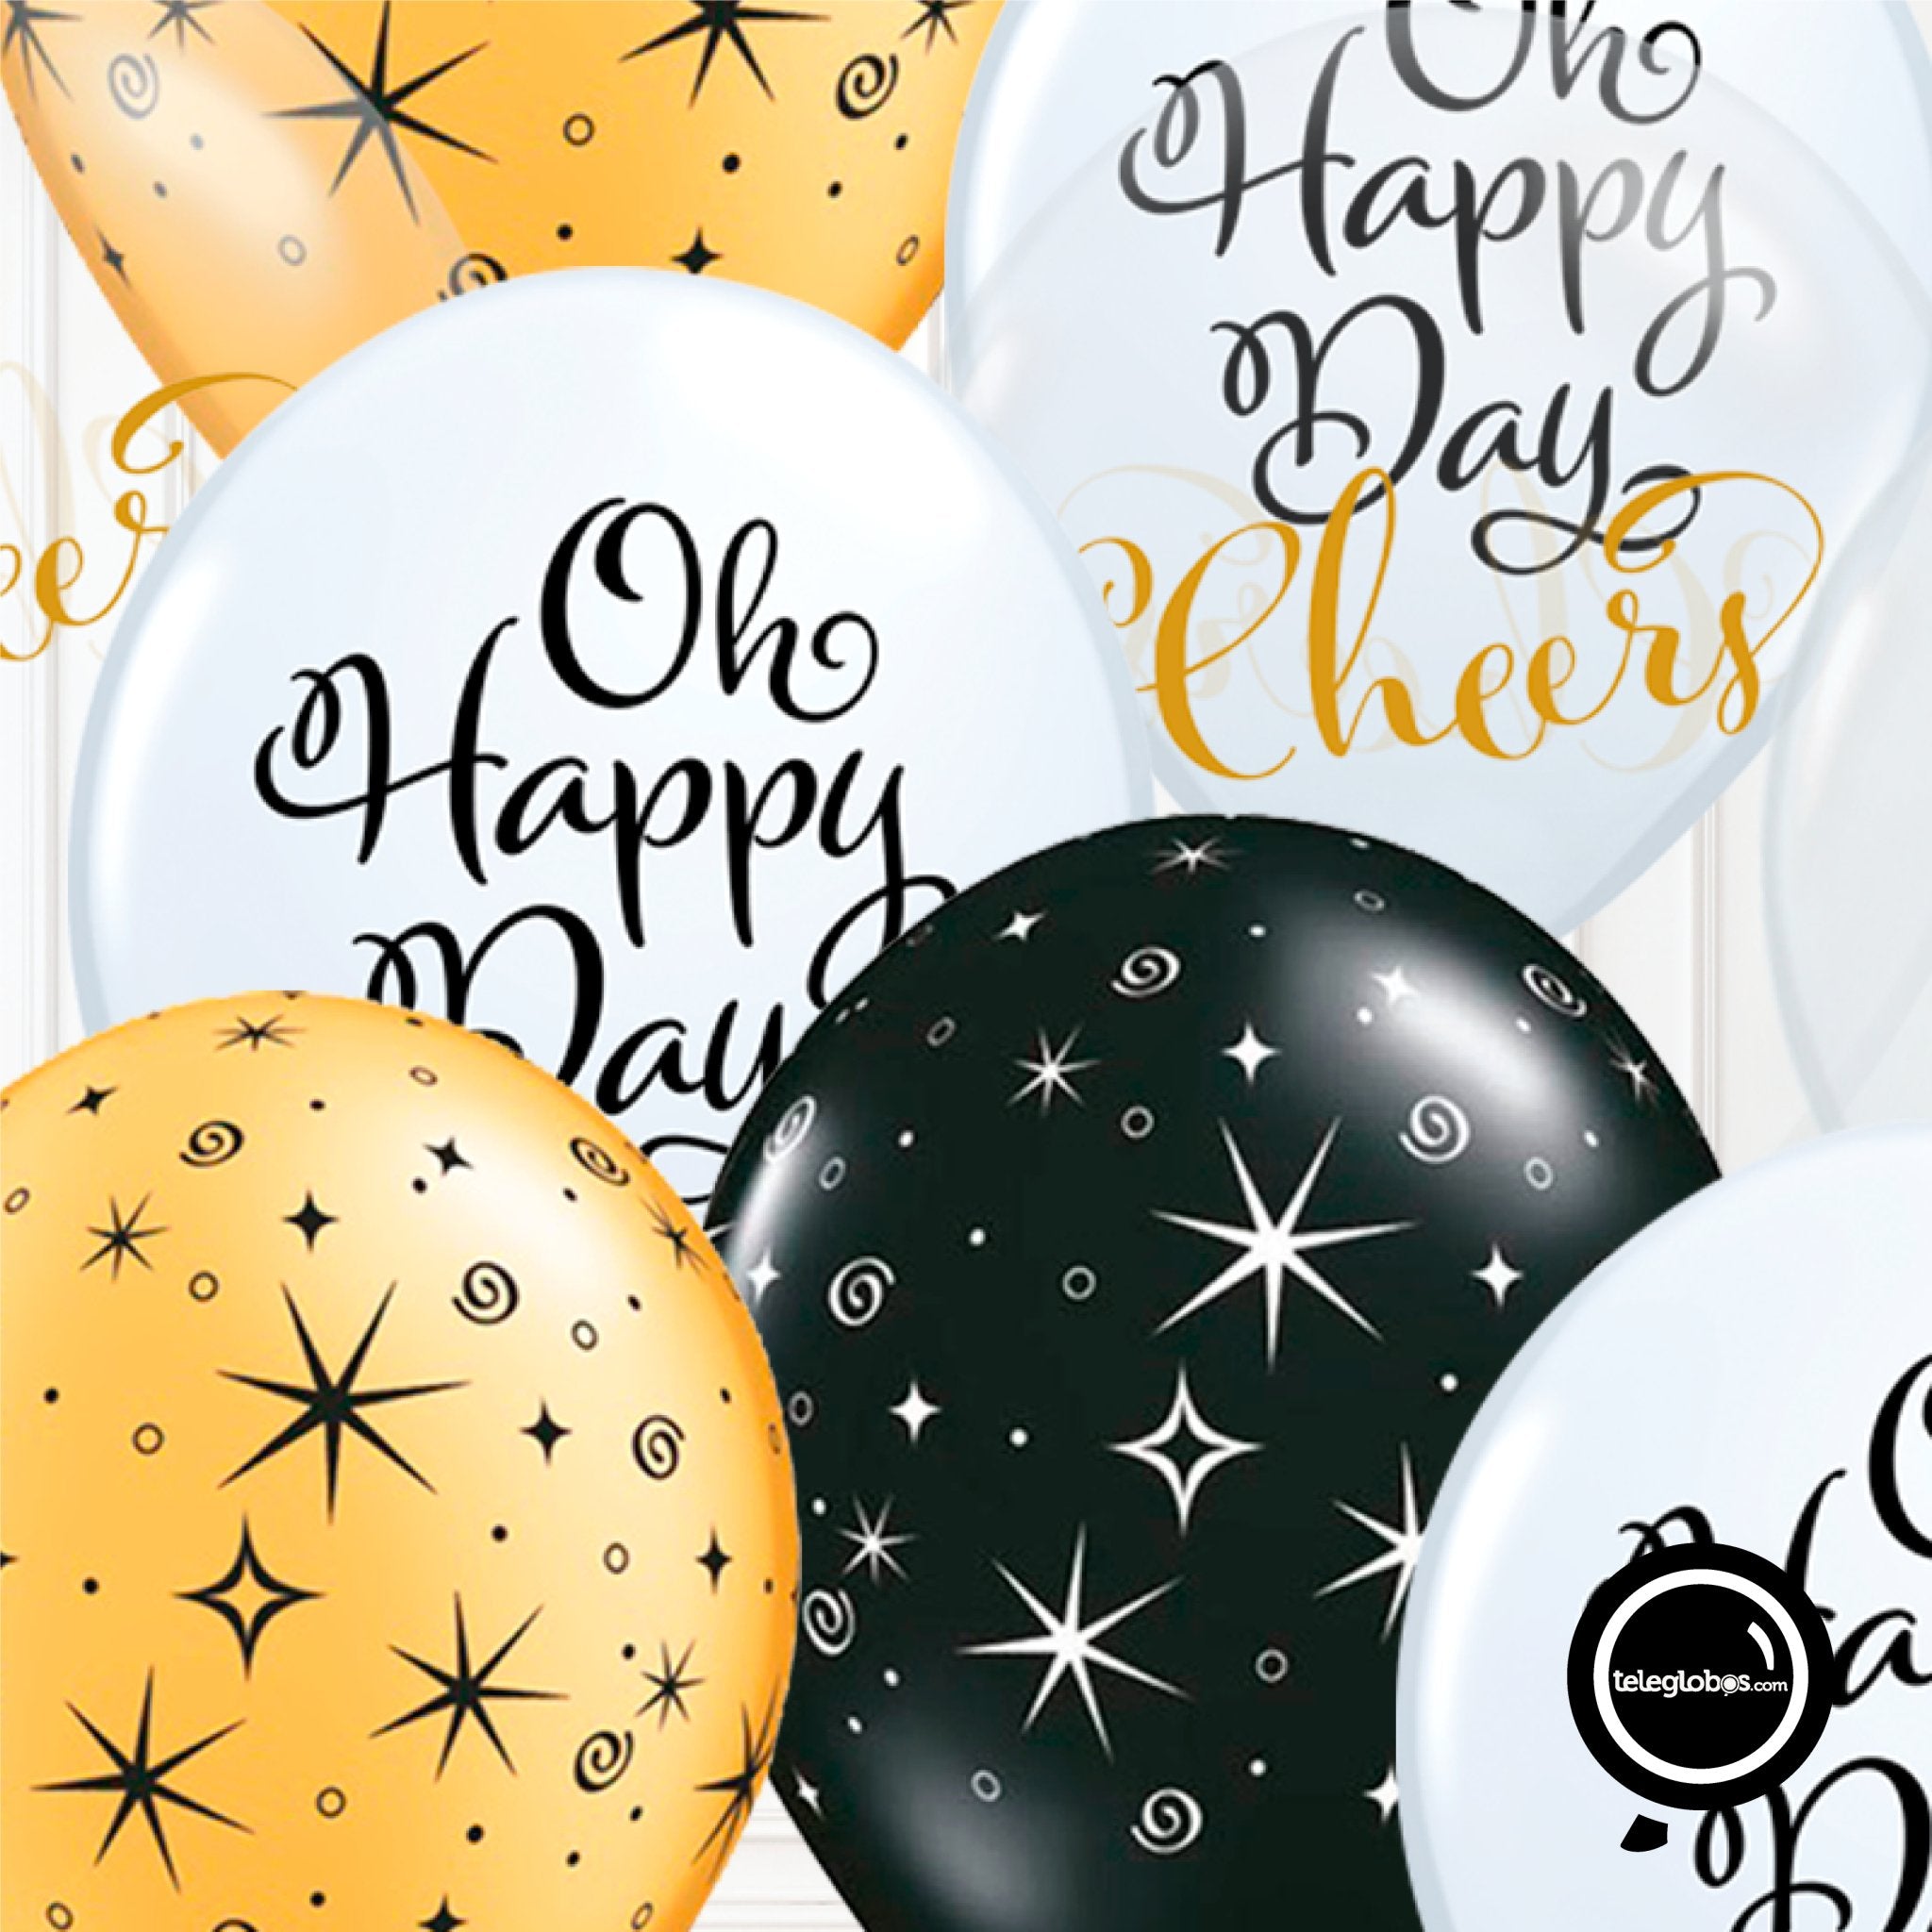 12 globos inflados con helio -Oh Happy Day/Cheers- Bio* -RAC014- | Globos y Regalos Teleglobos.com.mx.